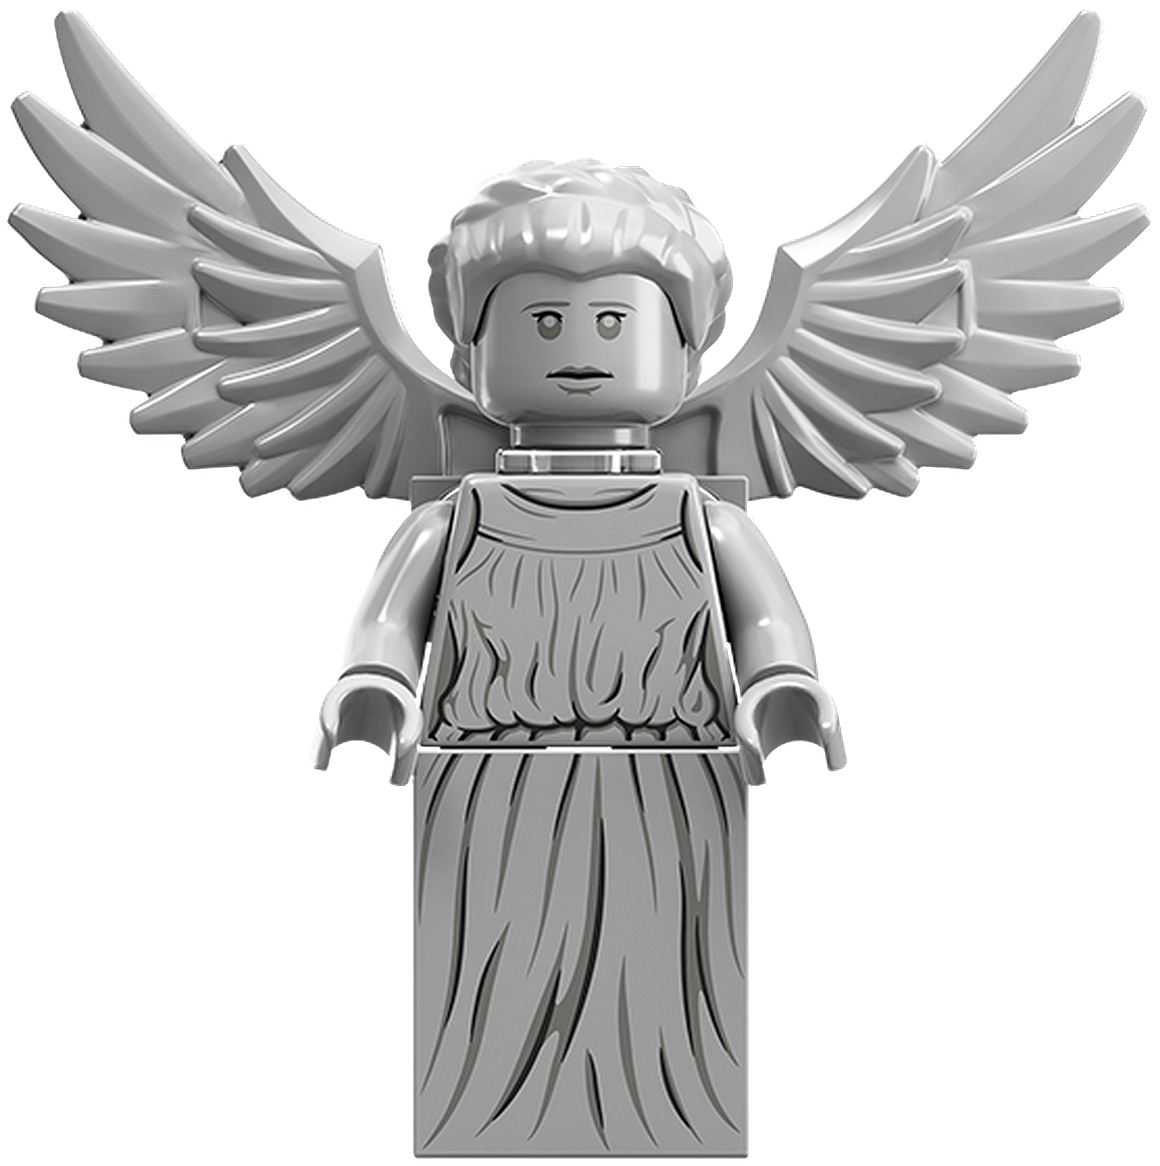 Doctor Lego Dimensions Lego Ideas Weeping Angel.